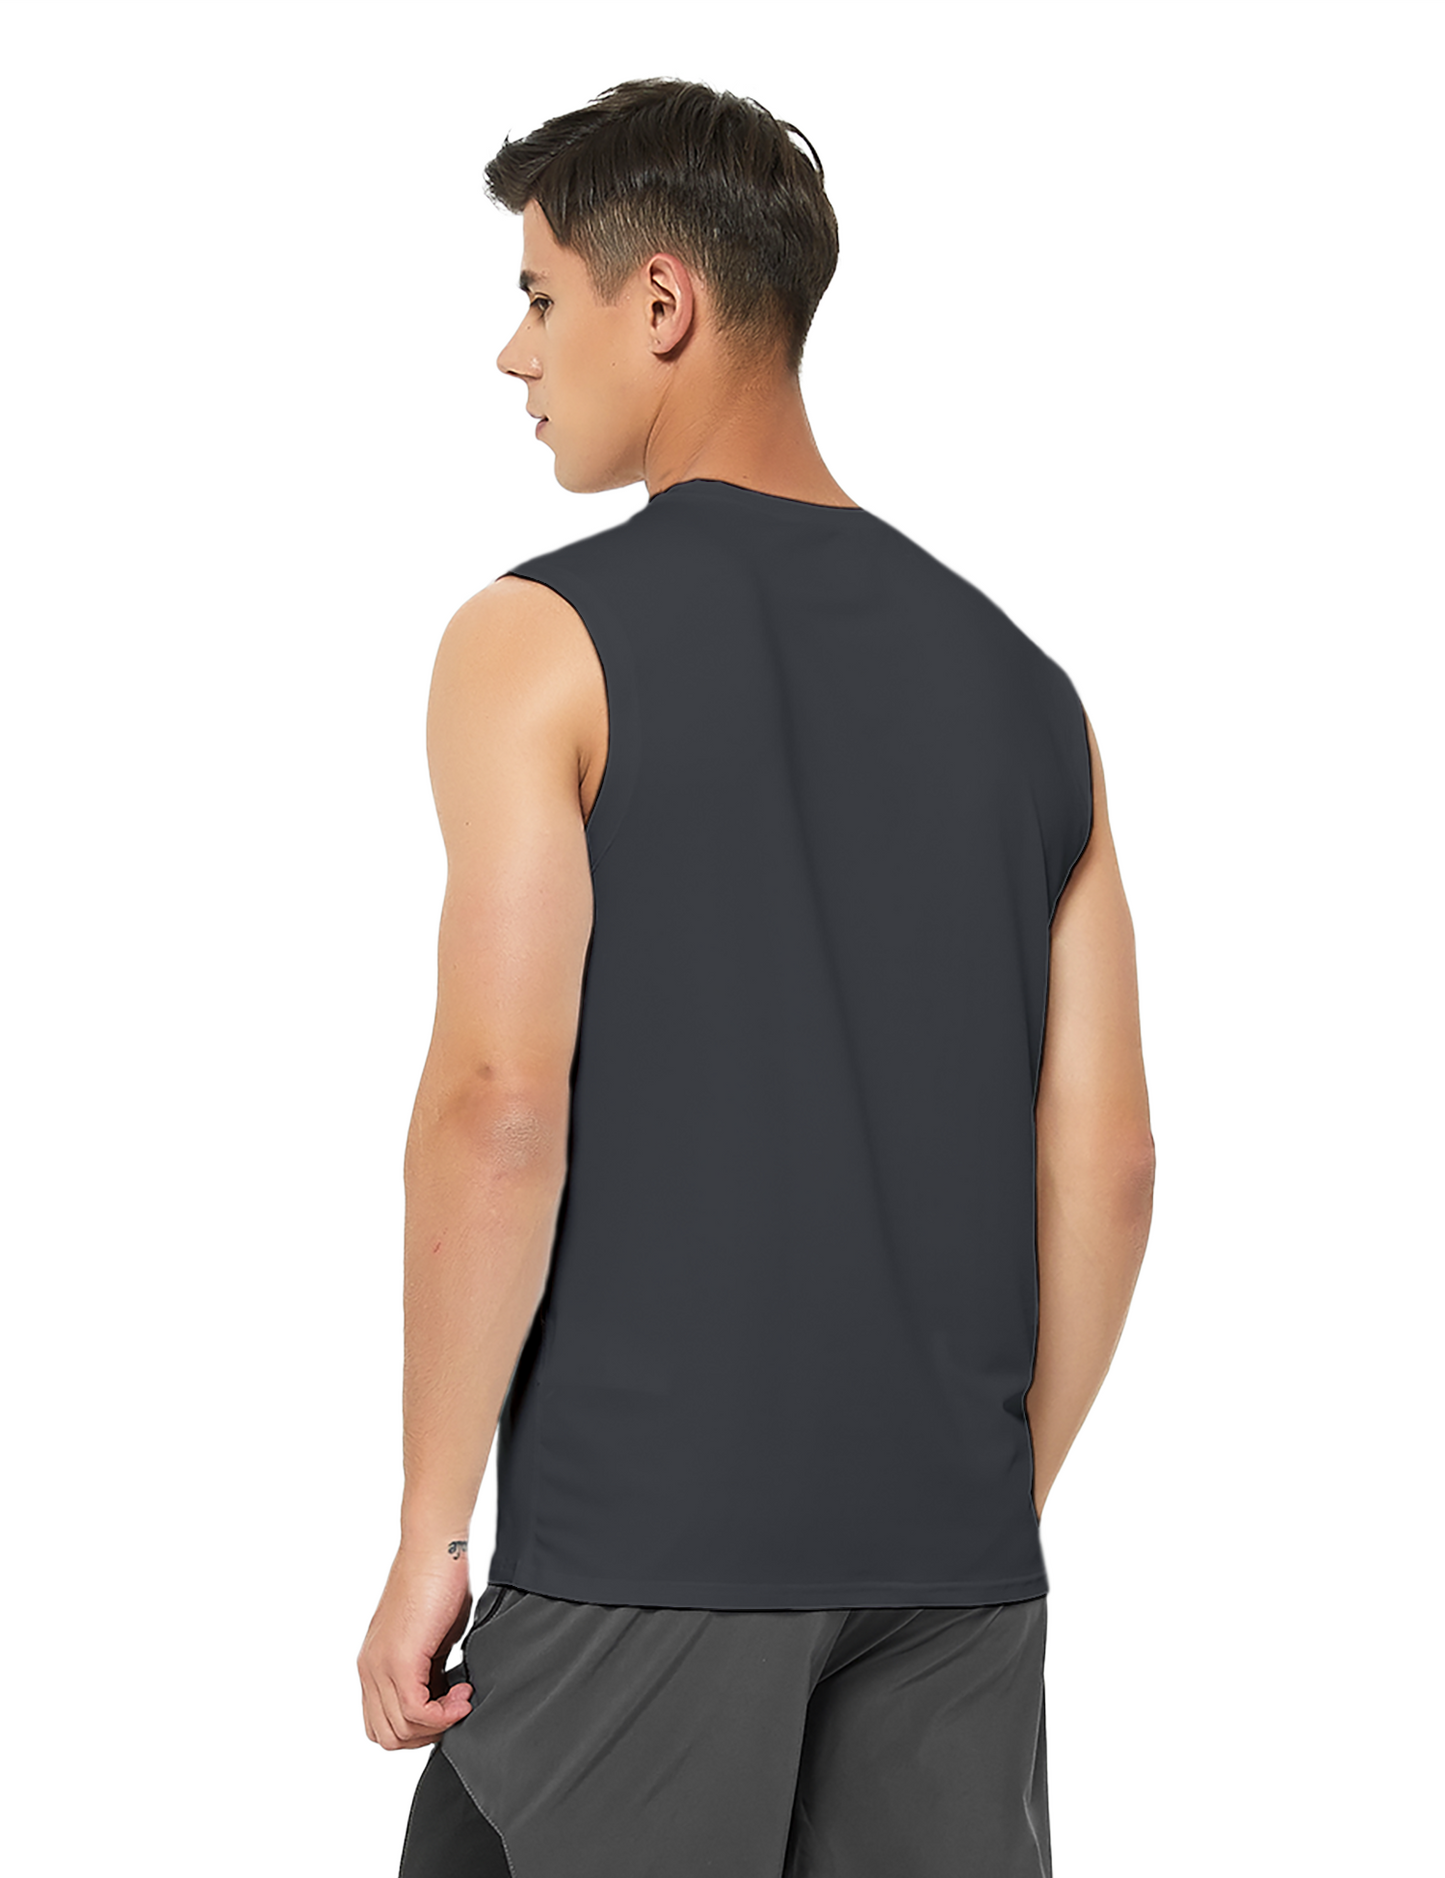 mens sleeveless workout swim shirts charcoal